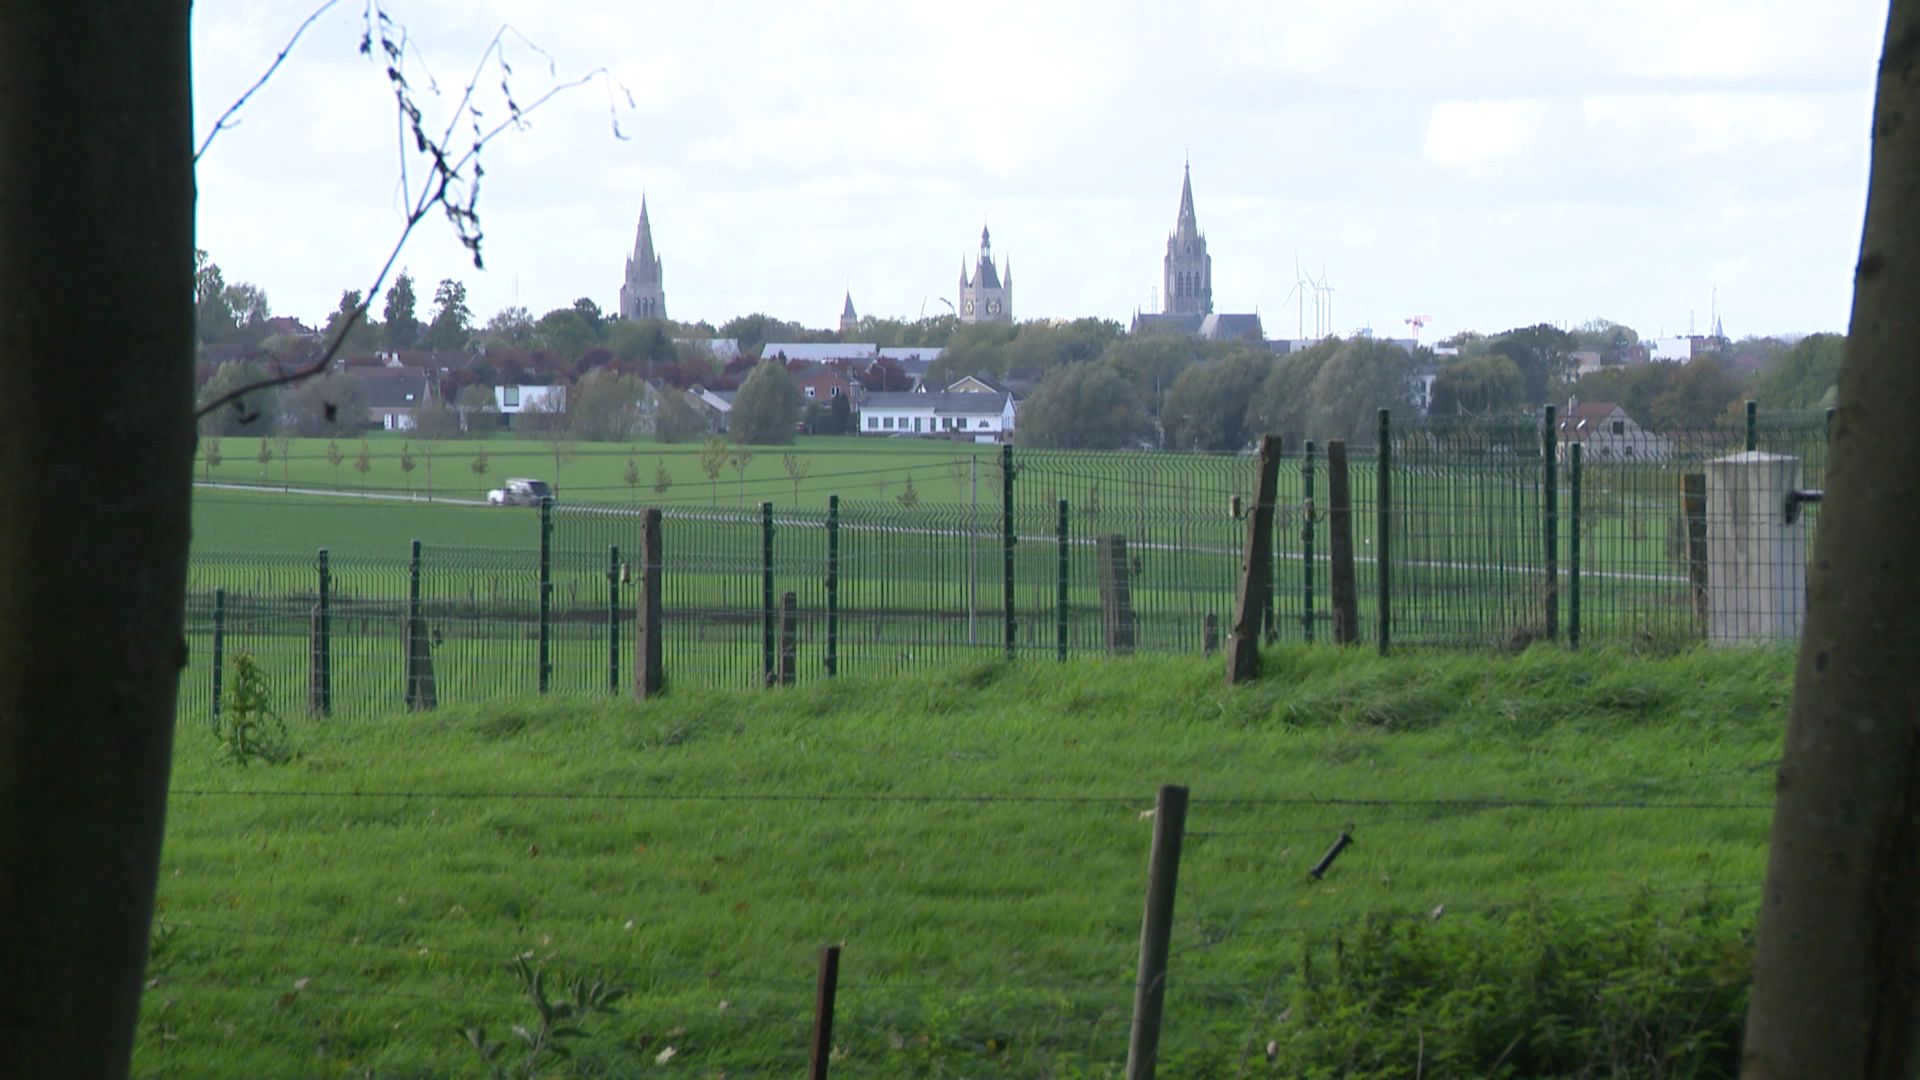 La ville d’Ypres est tout près, bien visible de l’ancien champ de bataille.